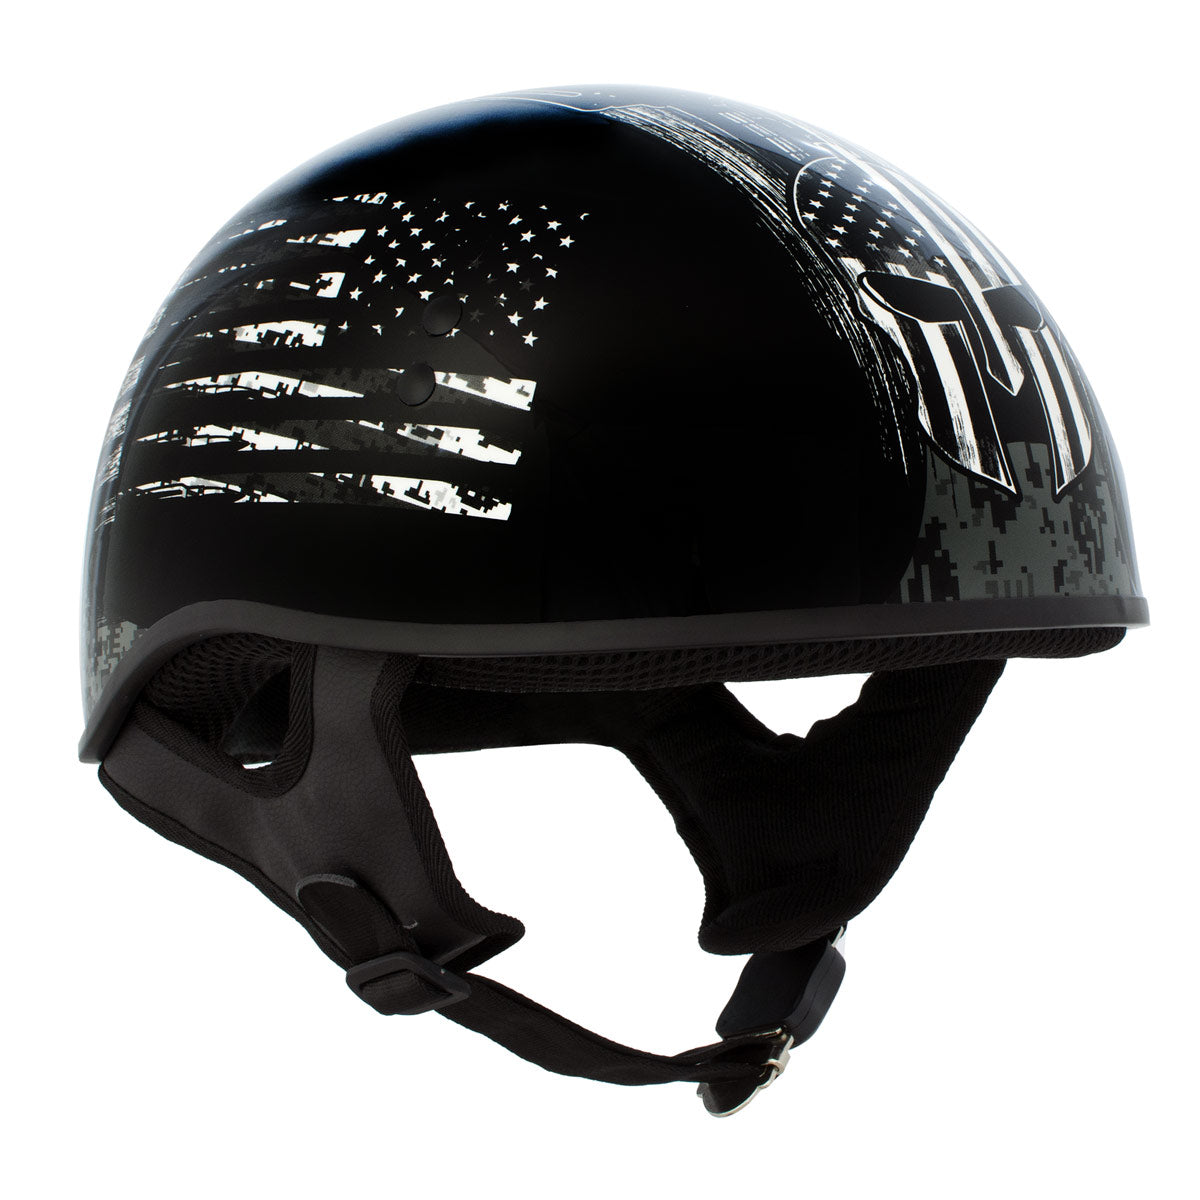 Hot Leathers HLD1043 Gloss Black 'Black and White Warrior Bullet' Advanced DOT Skull Helmet